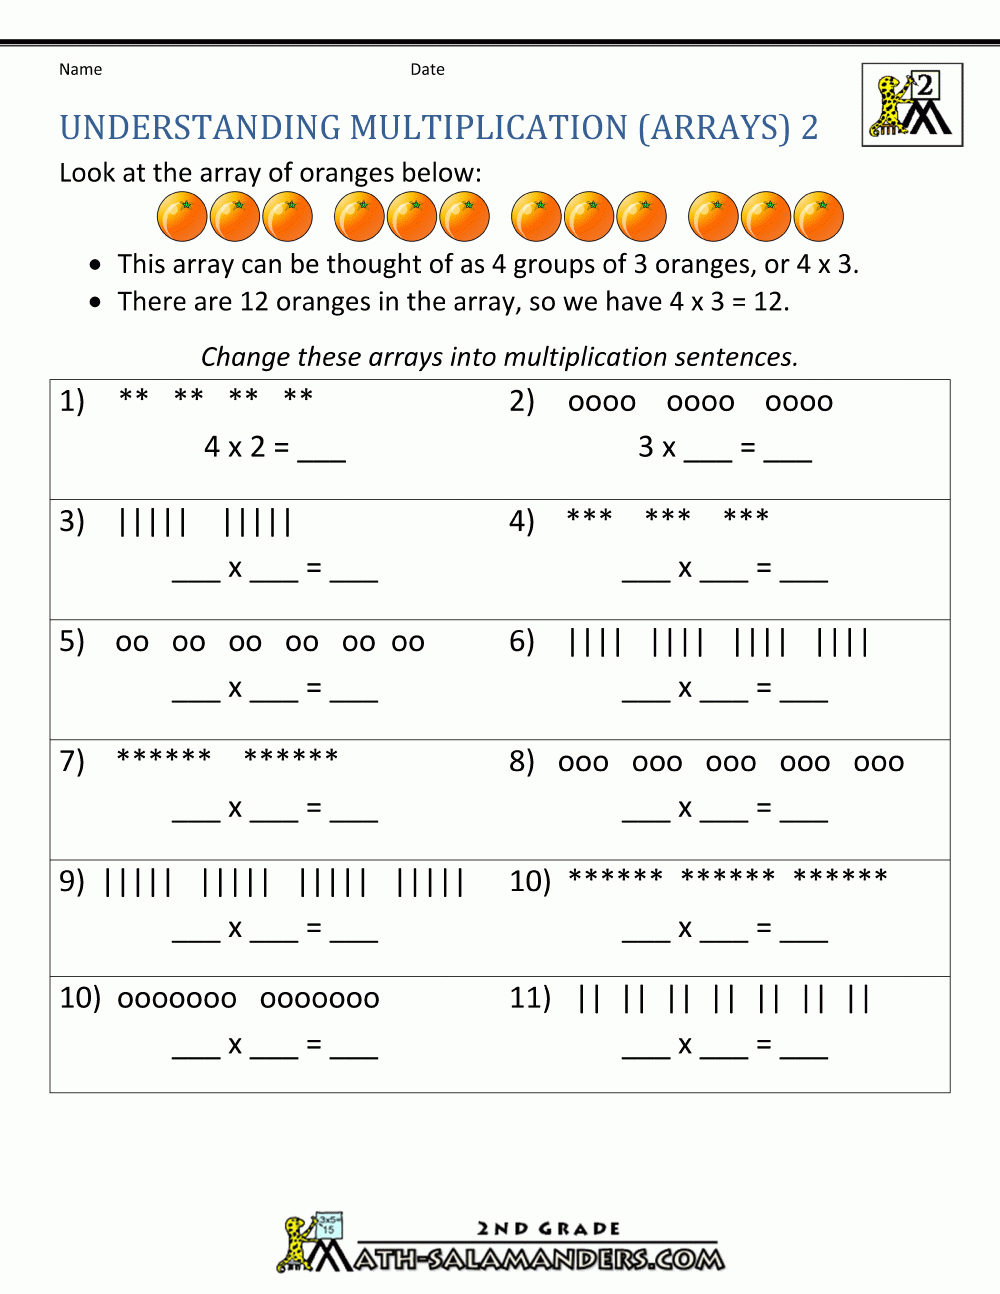 Multiplication Problems Worksheet For 2nd Grade